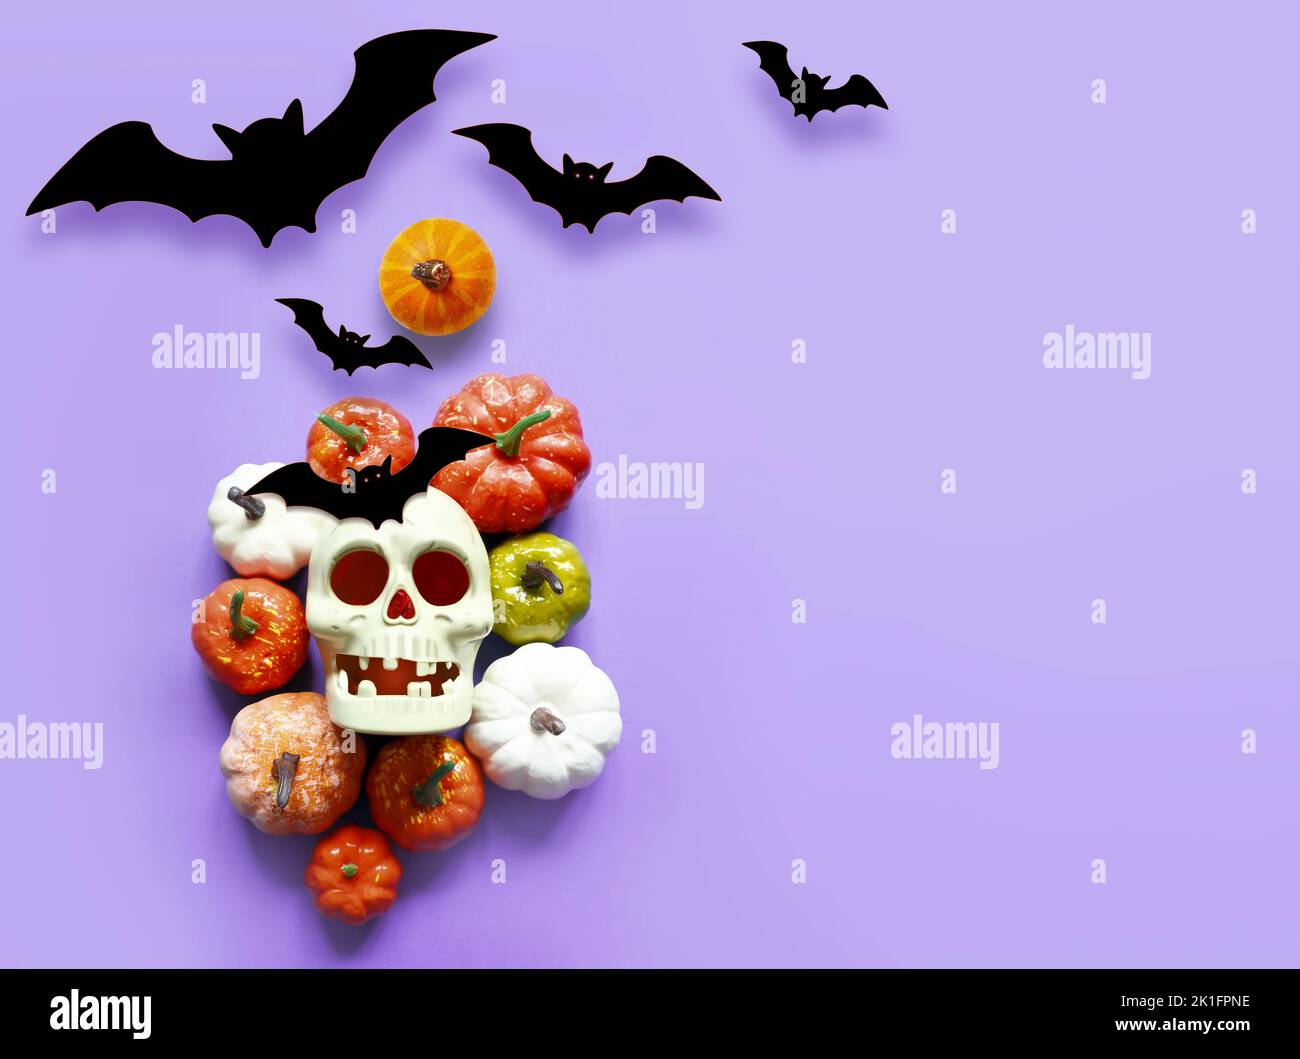 Fêtes, décoration et concept de fête - crâne, chauves-souris noires et citrouilles halloween sur fond violet. Banque D'Images